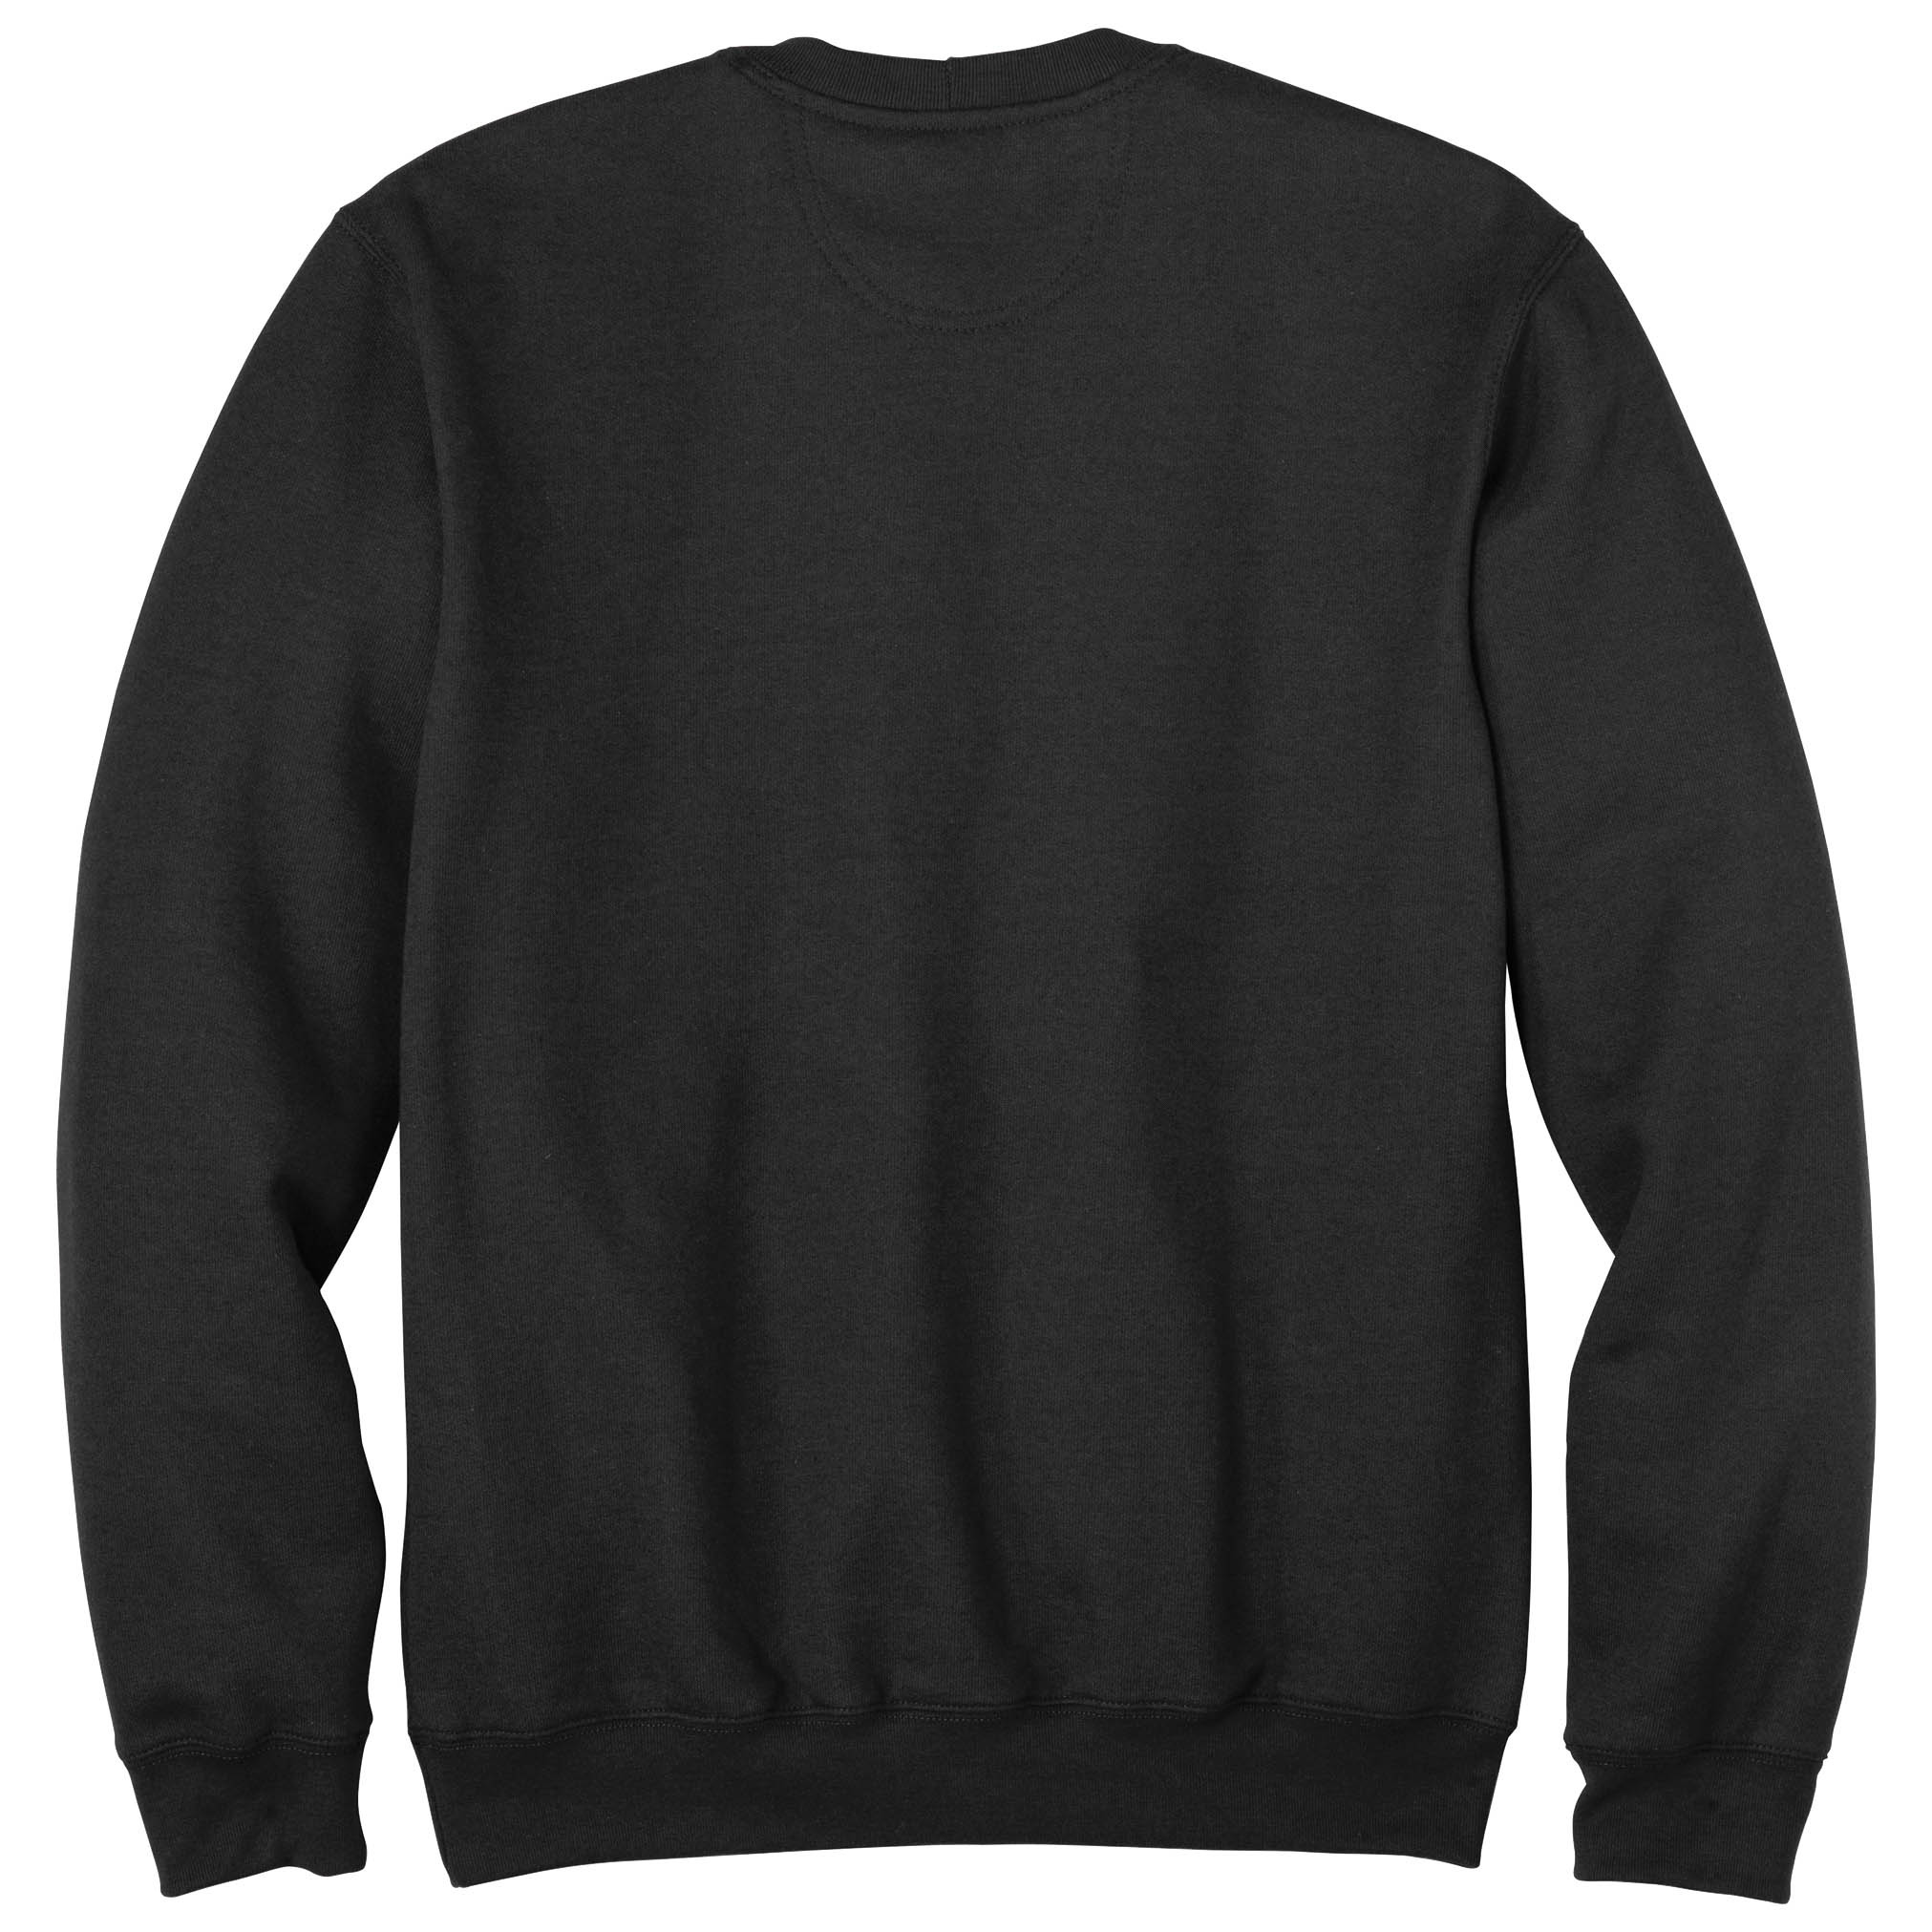 Sweatshirt Carhartt K124 Crewneck Pullover Arbeit Freizeit Shirt schwarz black 